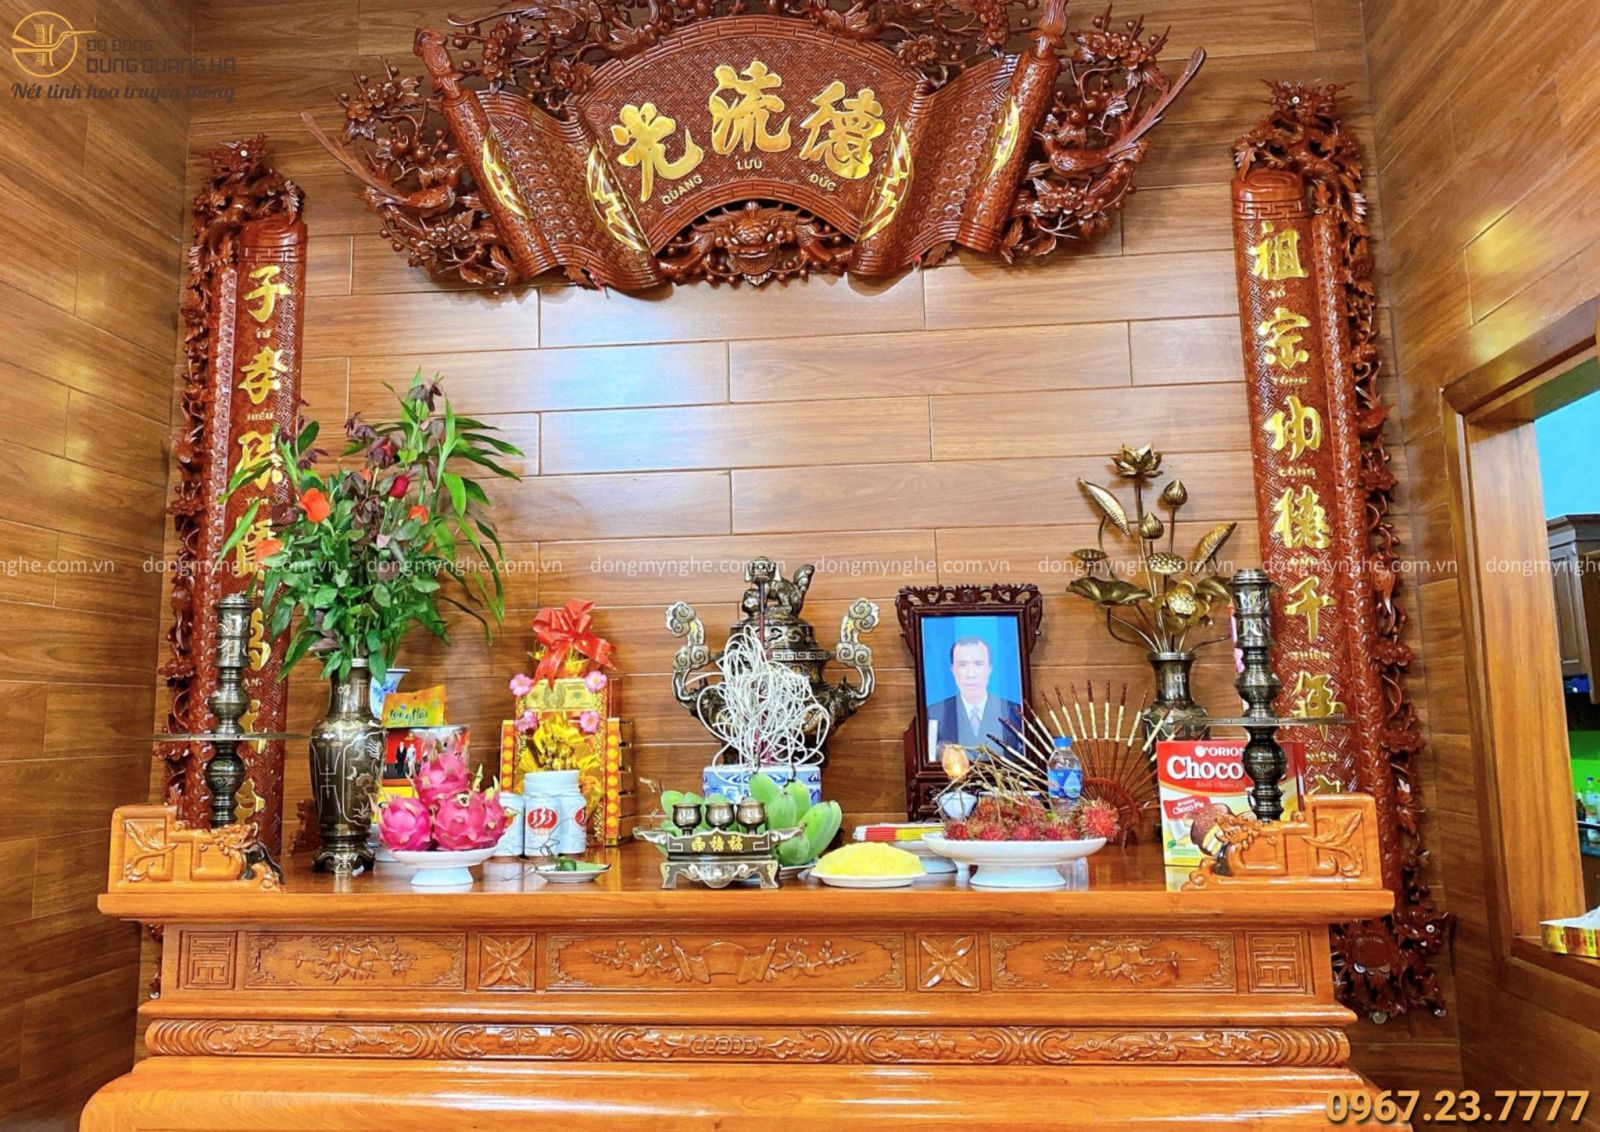 Bàn thờ Phật và gia tiên trang trọng và ấm cúng trong không gian gia đình khiến cho không khí thêm trang nghiêm và tinh tế. Việc cùng nhau cầu nguyện và thắp nhang trên bàn thờ Phật mang đến mối quan hệ gia đình mật thiết và hạnh phúc thêm trọn vẹn.